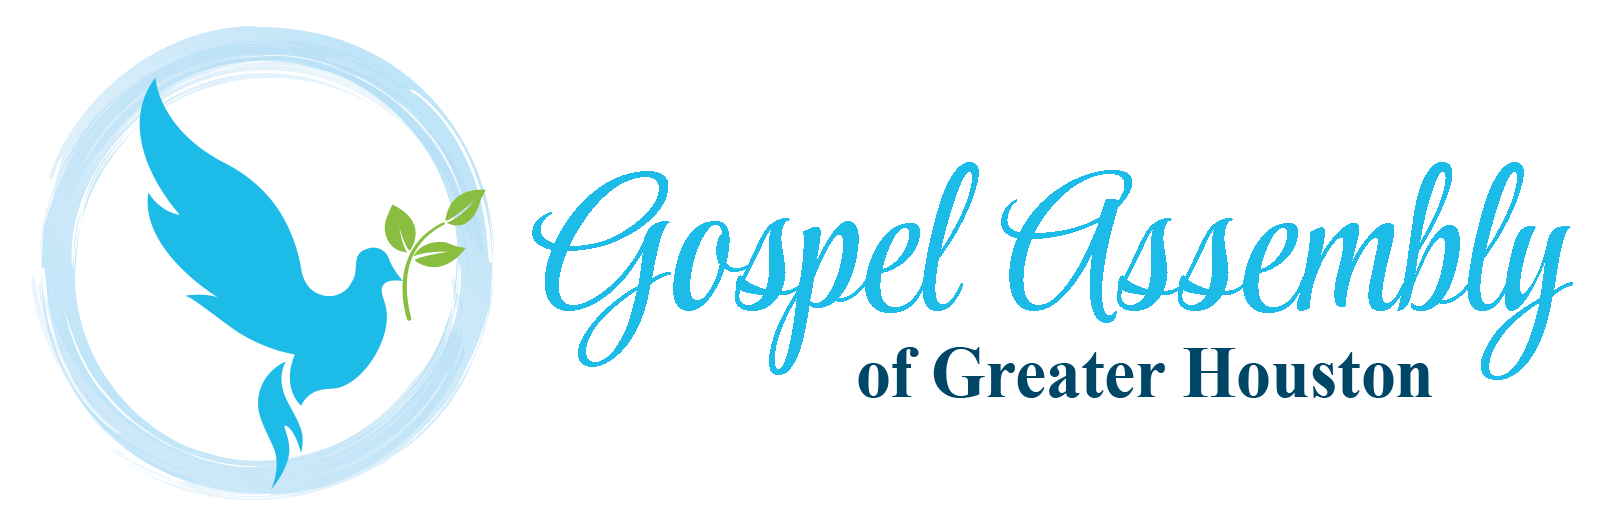 Gospel Assembly of Greater Houston